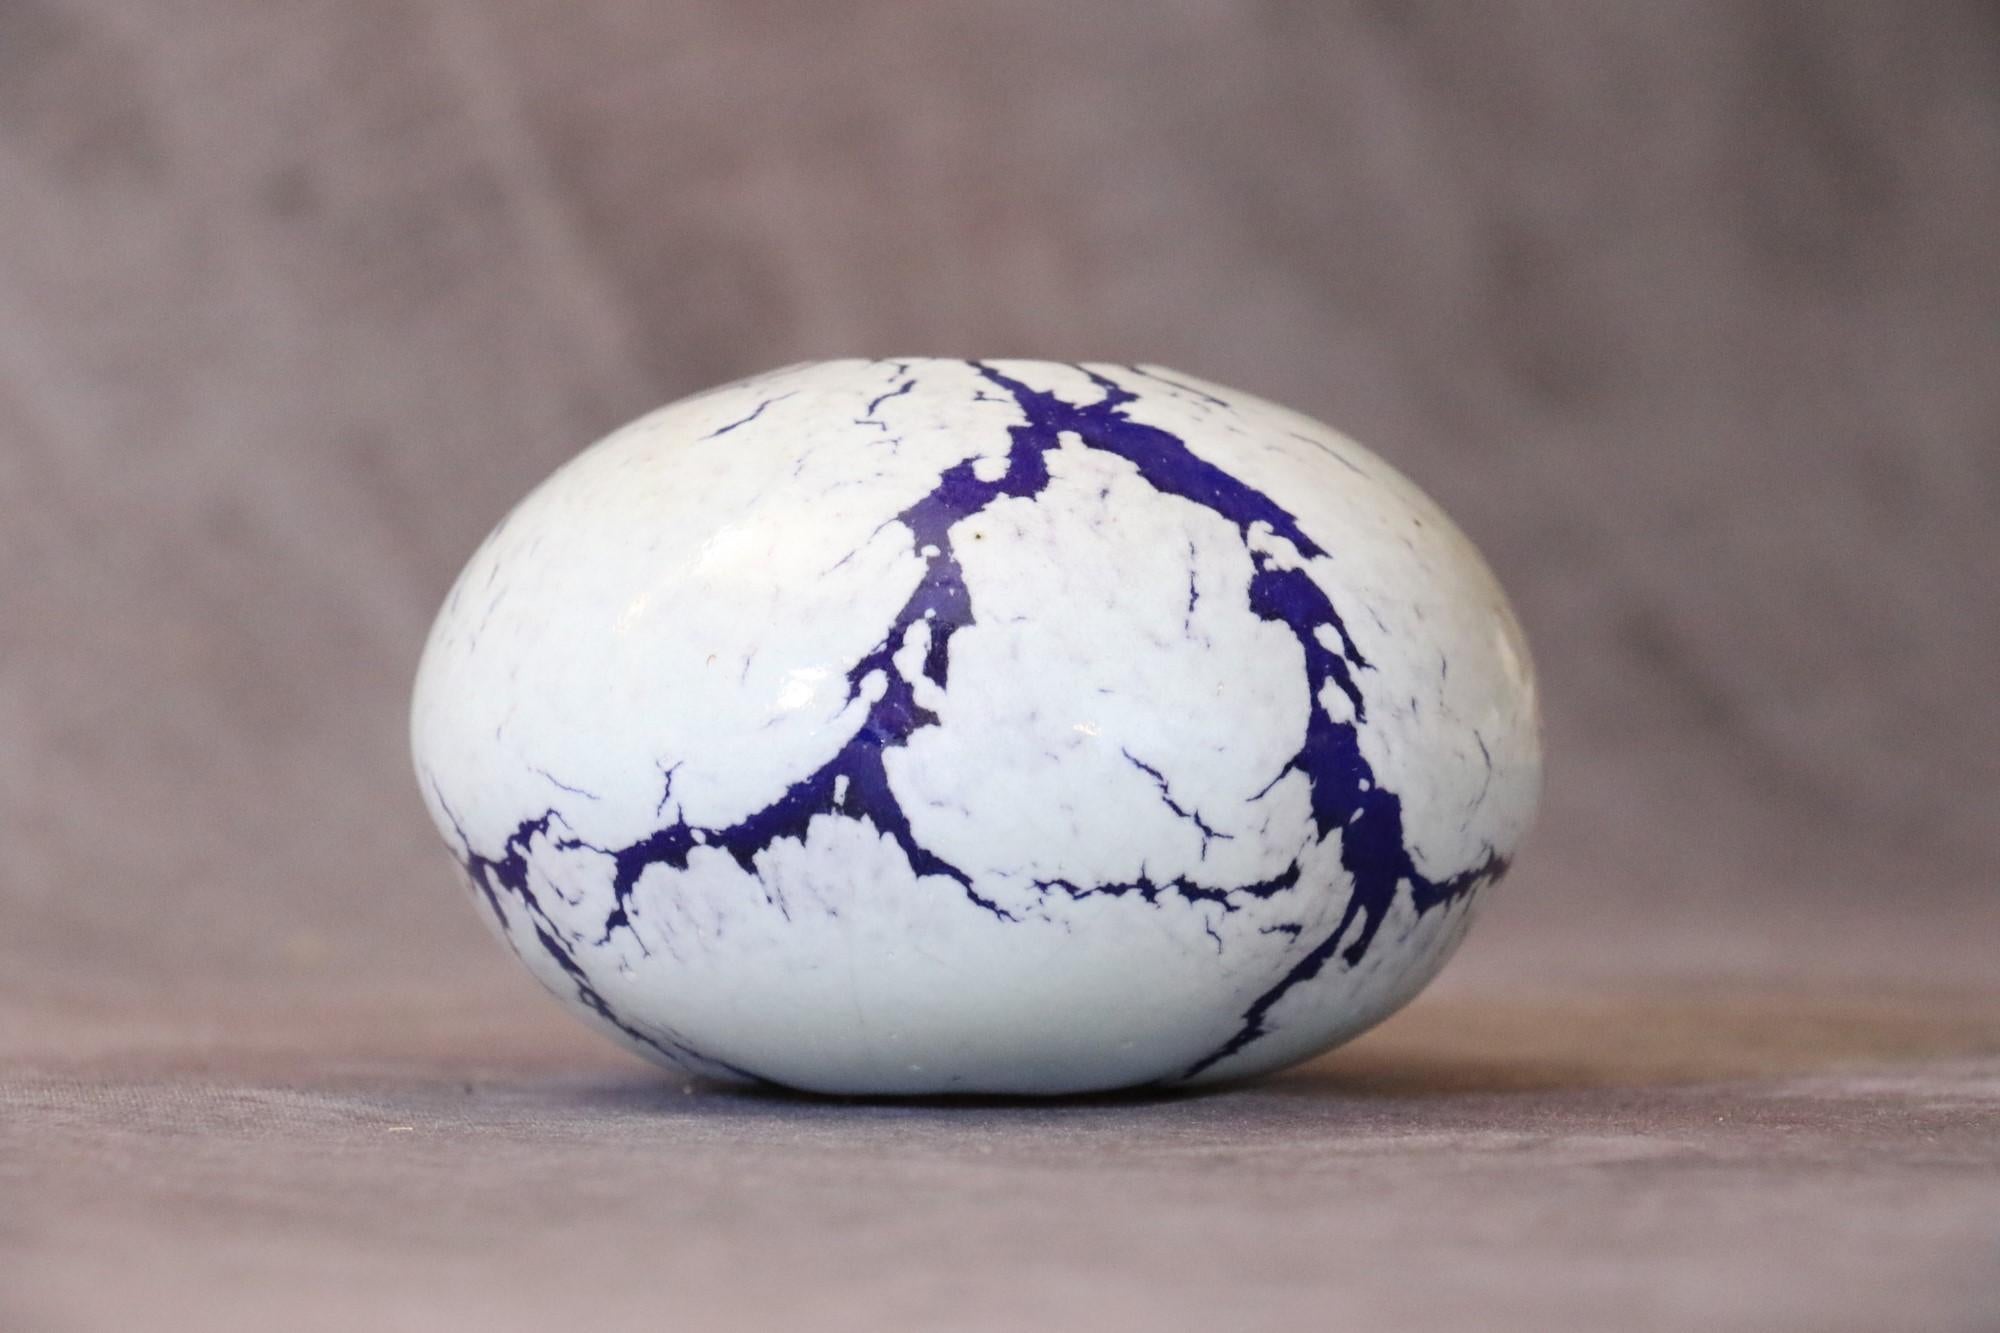 Jarrón bola de cerámica francesa morada y blanca de Marc Uzan, hacia 2000 Esmaltado en venta